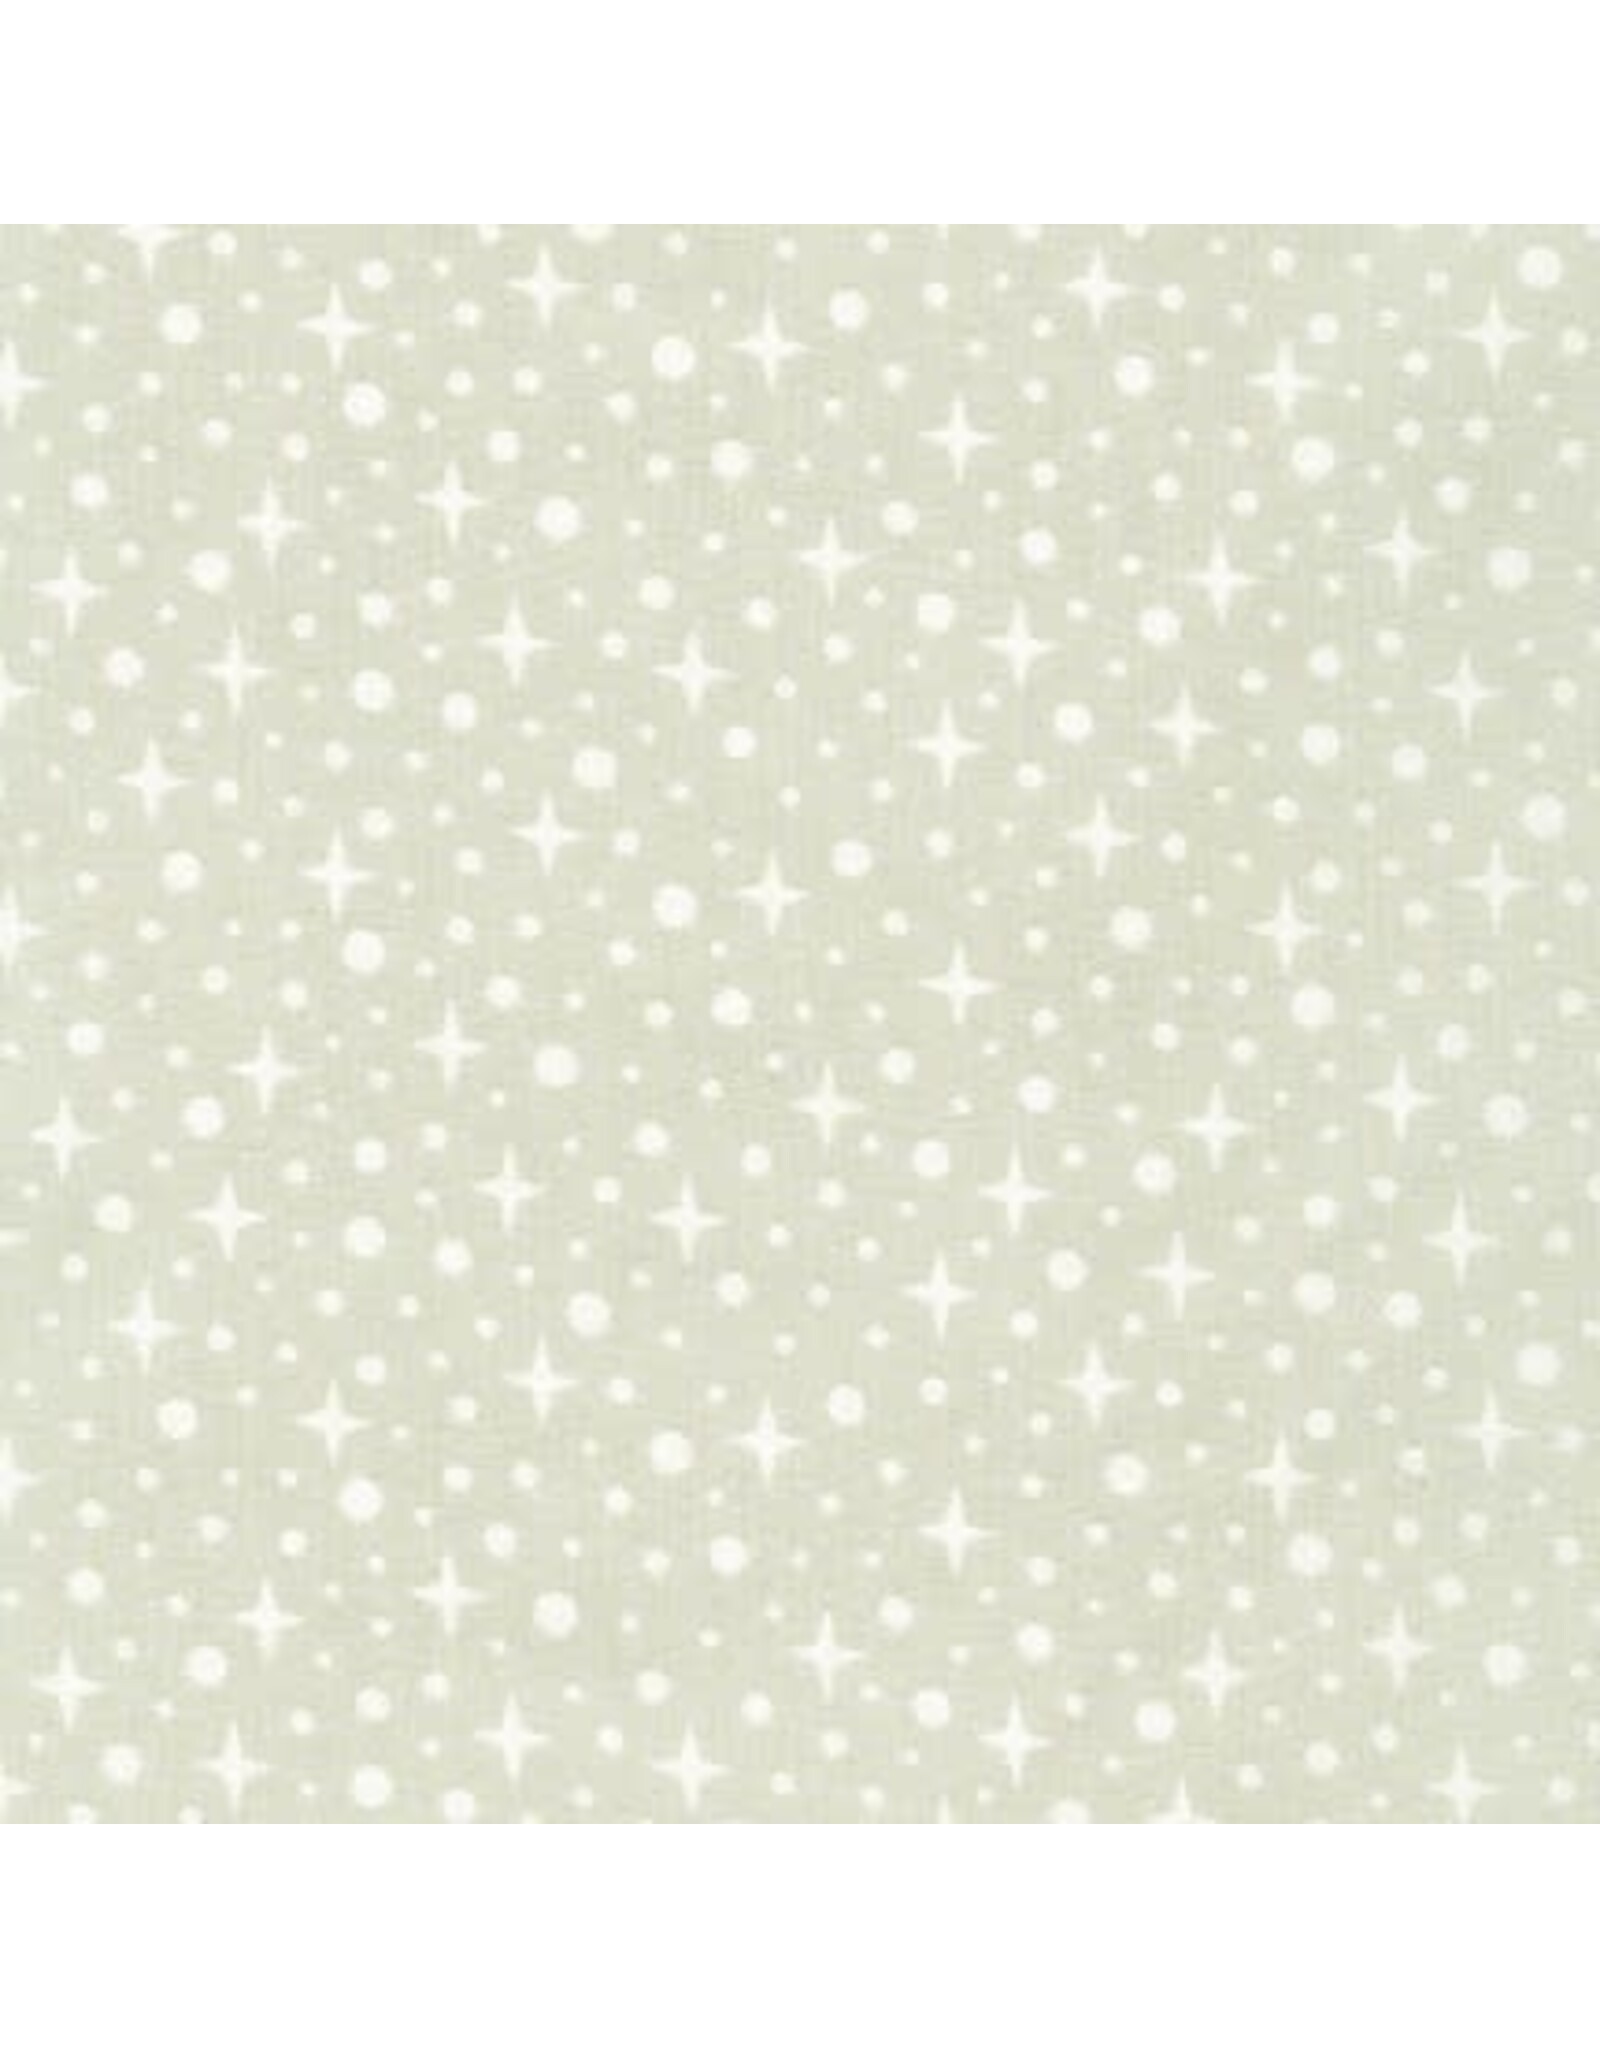 Robert Kaufman Sunroom - Star Shine Dove coupon (± 58 x 110 cm)